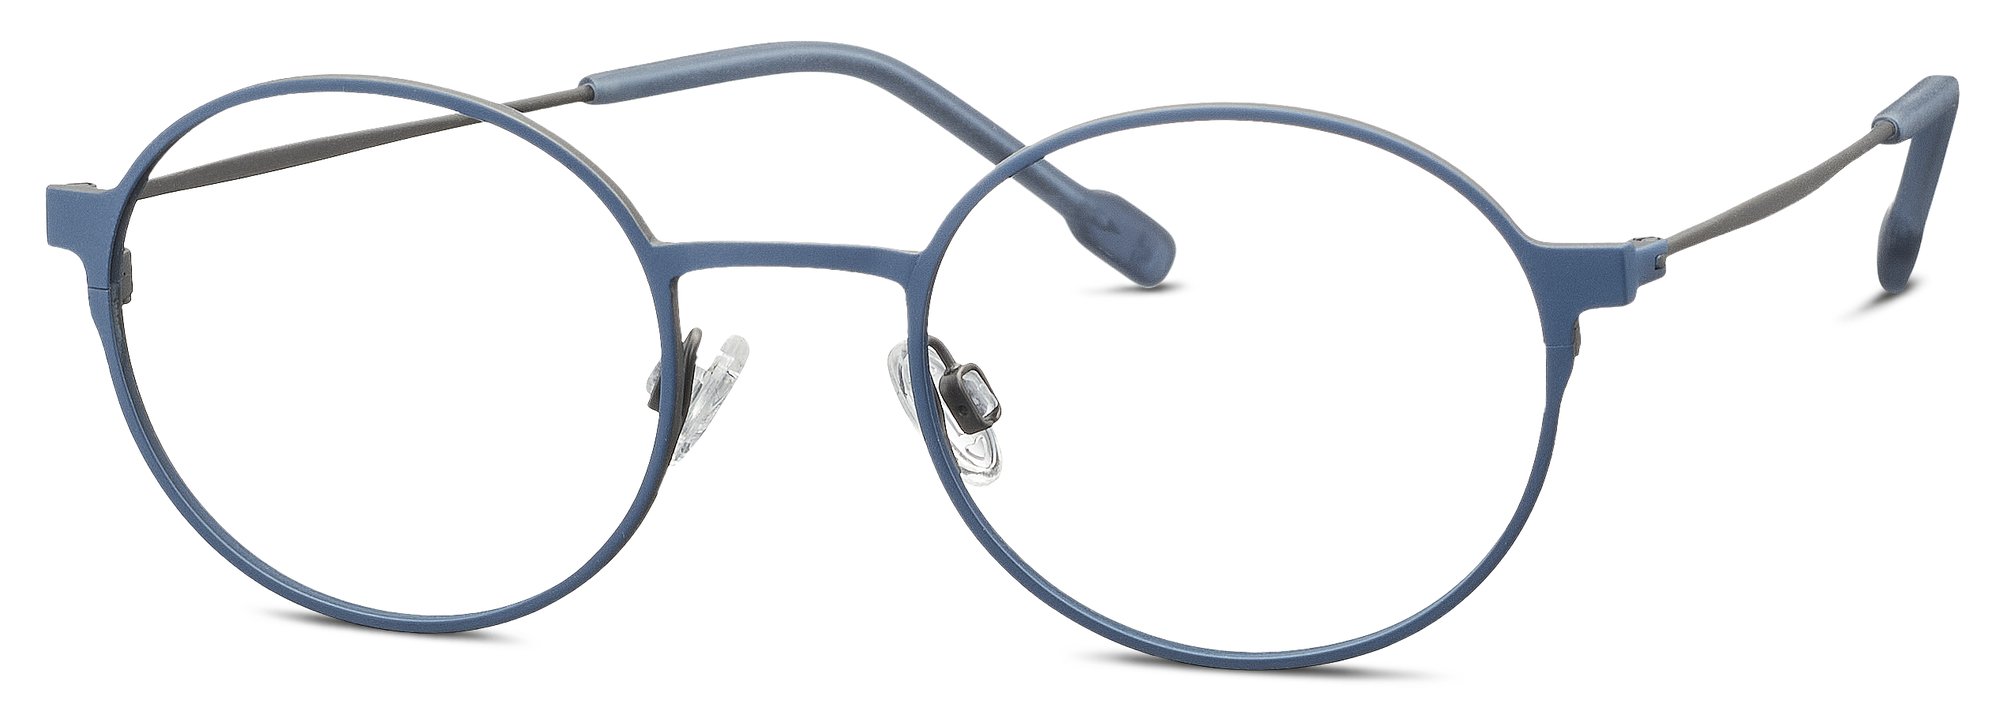 Das Bild zeigt die Korrektionsbrille 830139 70 von der Marke Titanflex Kids in blau.